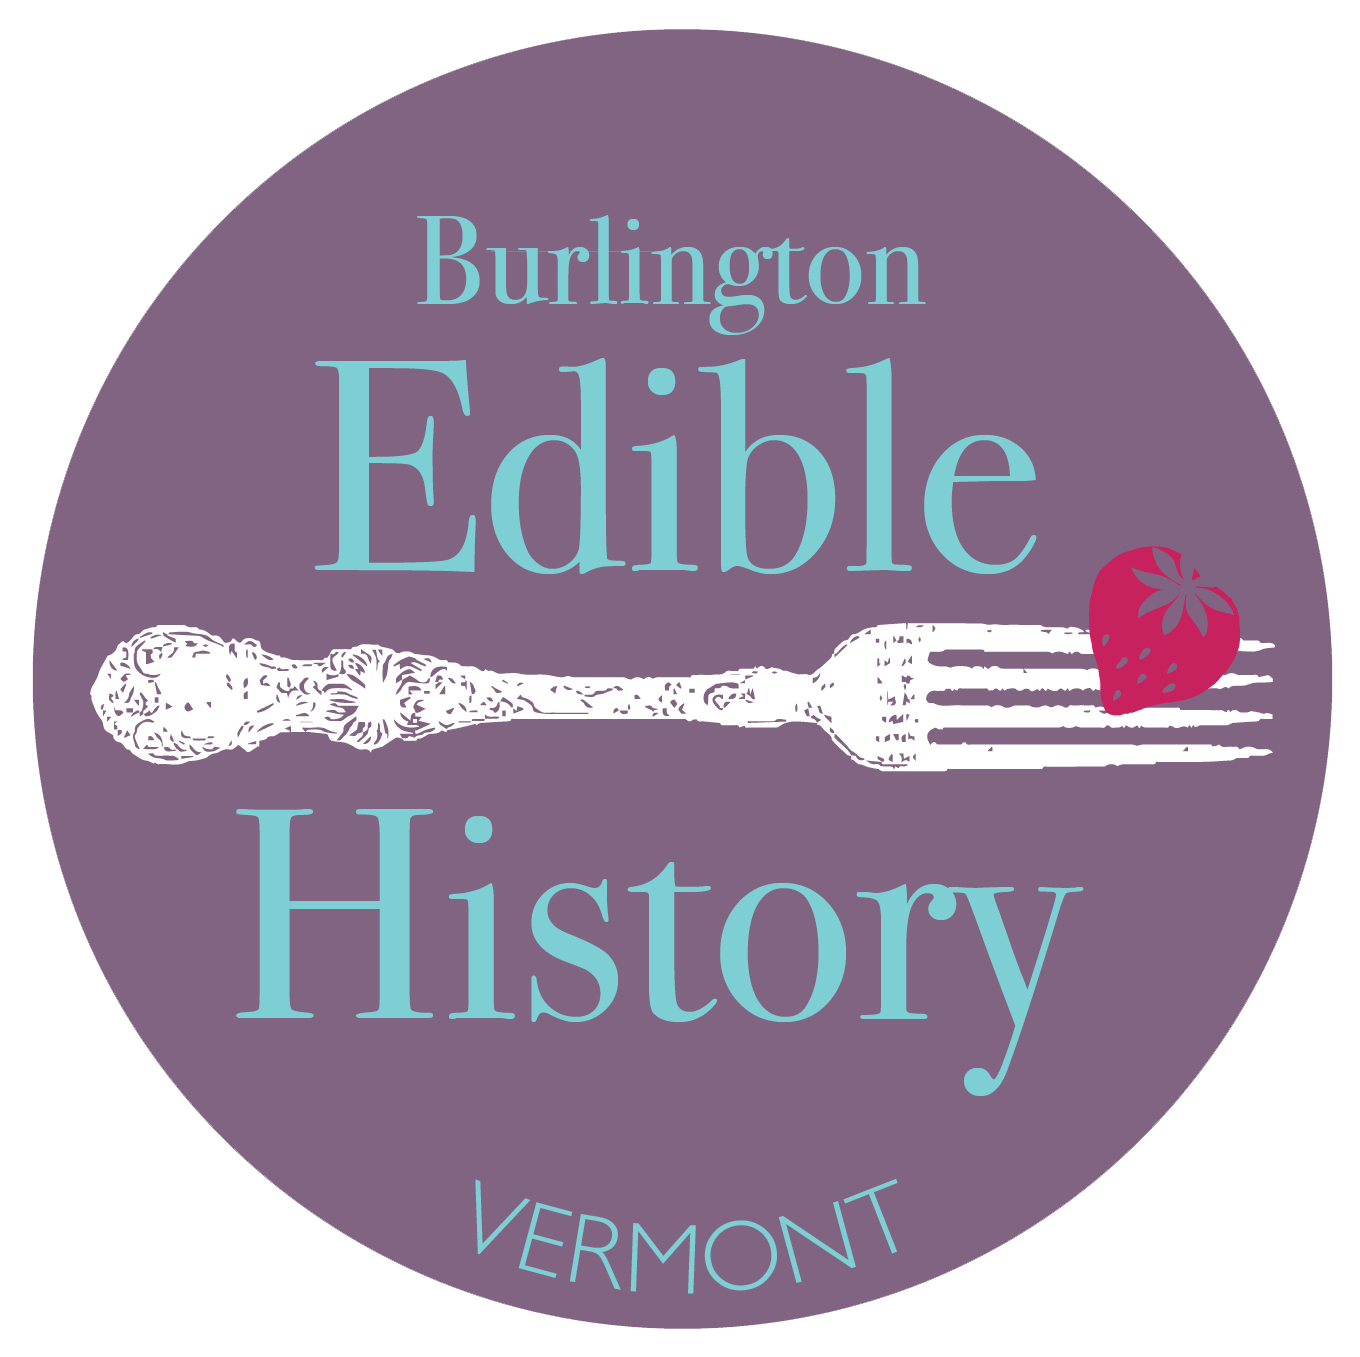 edible history tour burlington vt